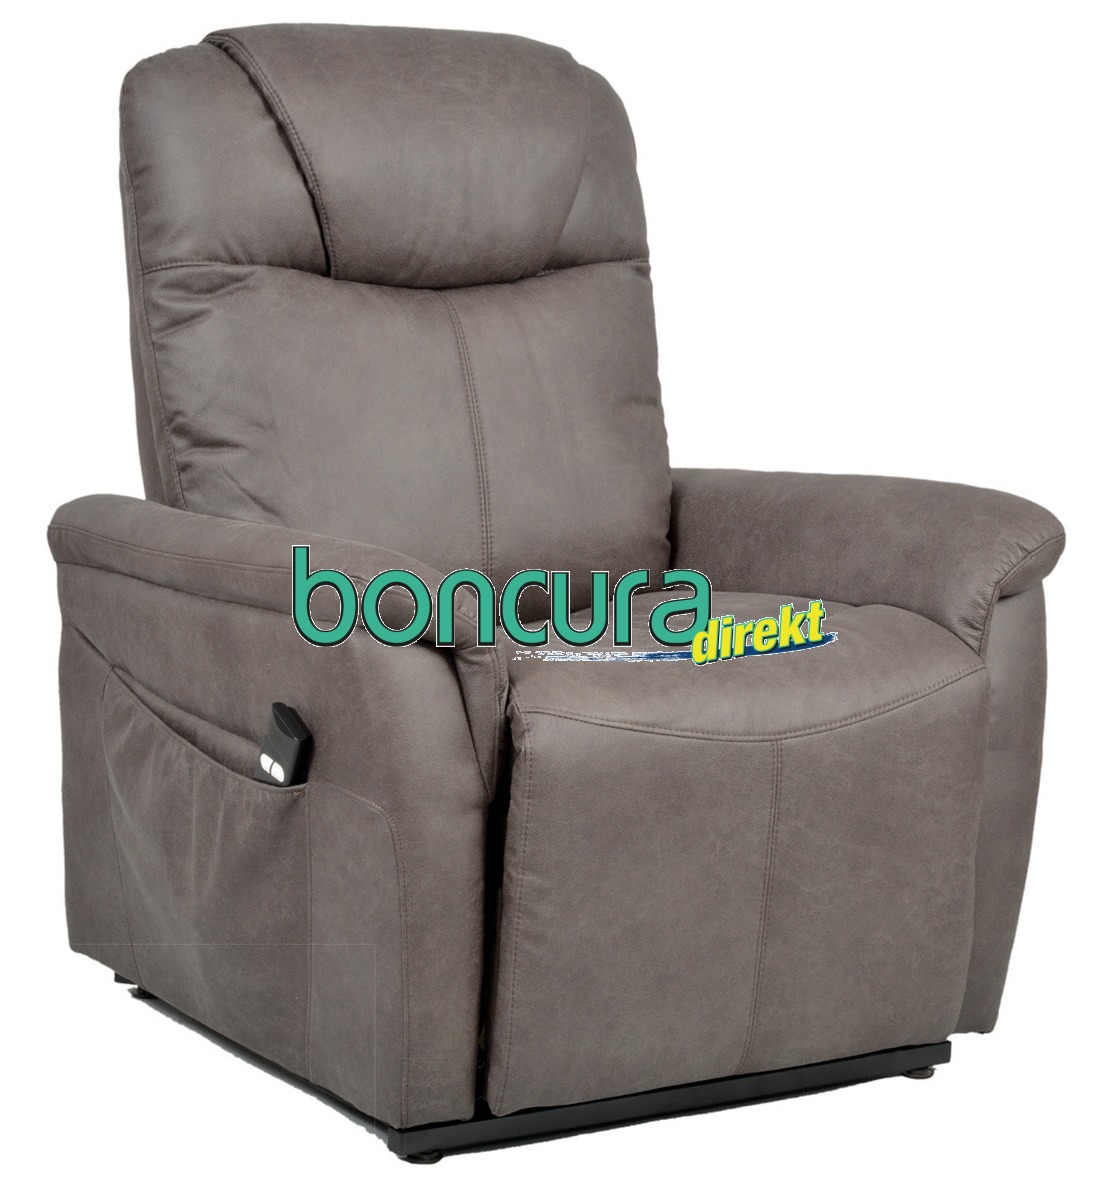 Aufstehsessel 2-motorig Anschmiegsamer Sessel mit hohem Sitzkomfort